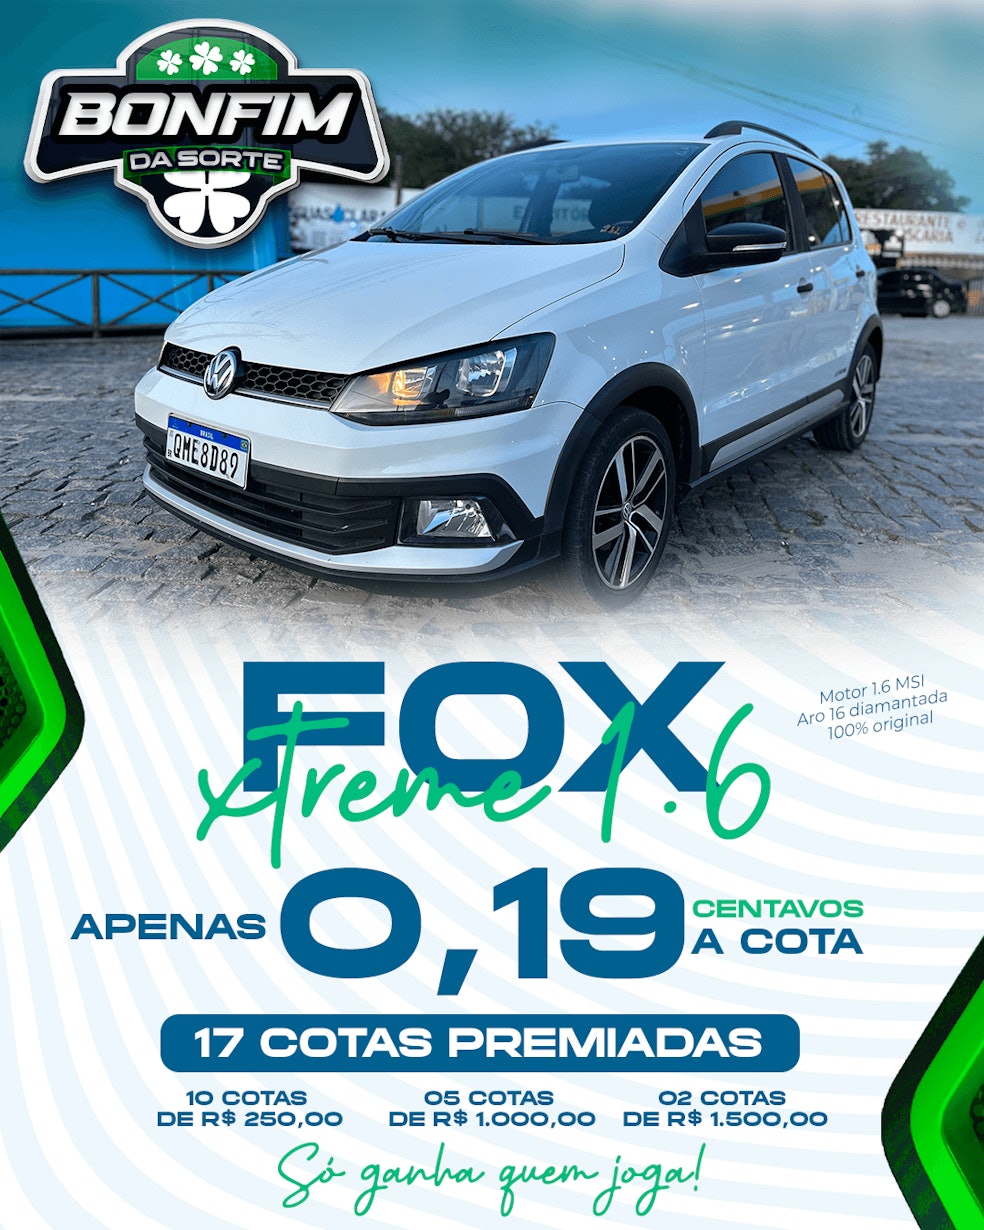 VW FOX XTREME 1.6 2019 OU 50 MIL NO PIX